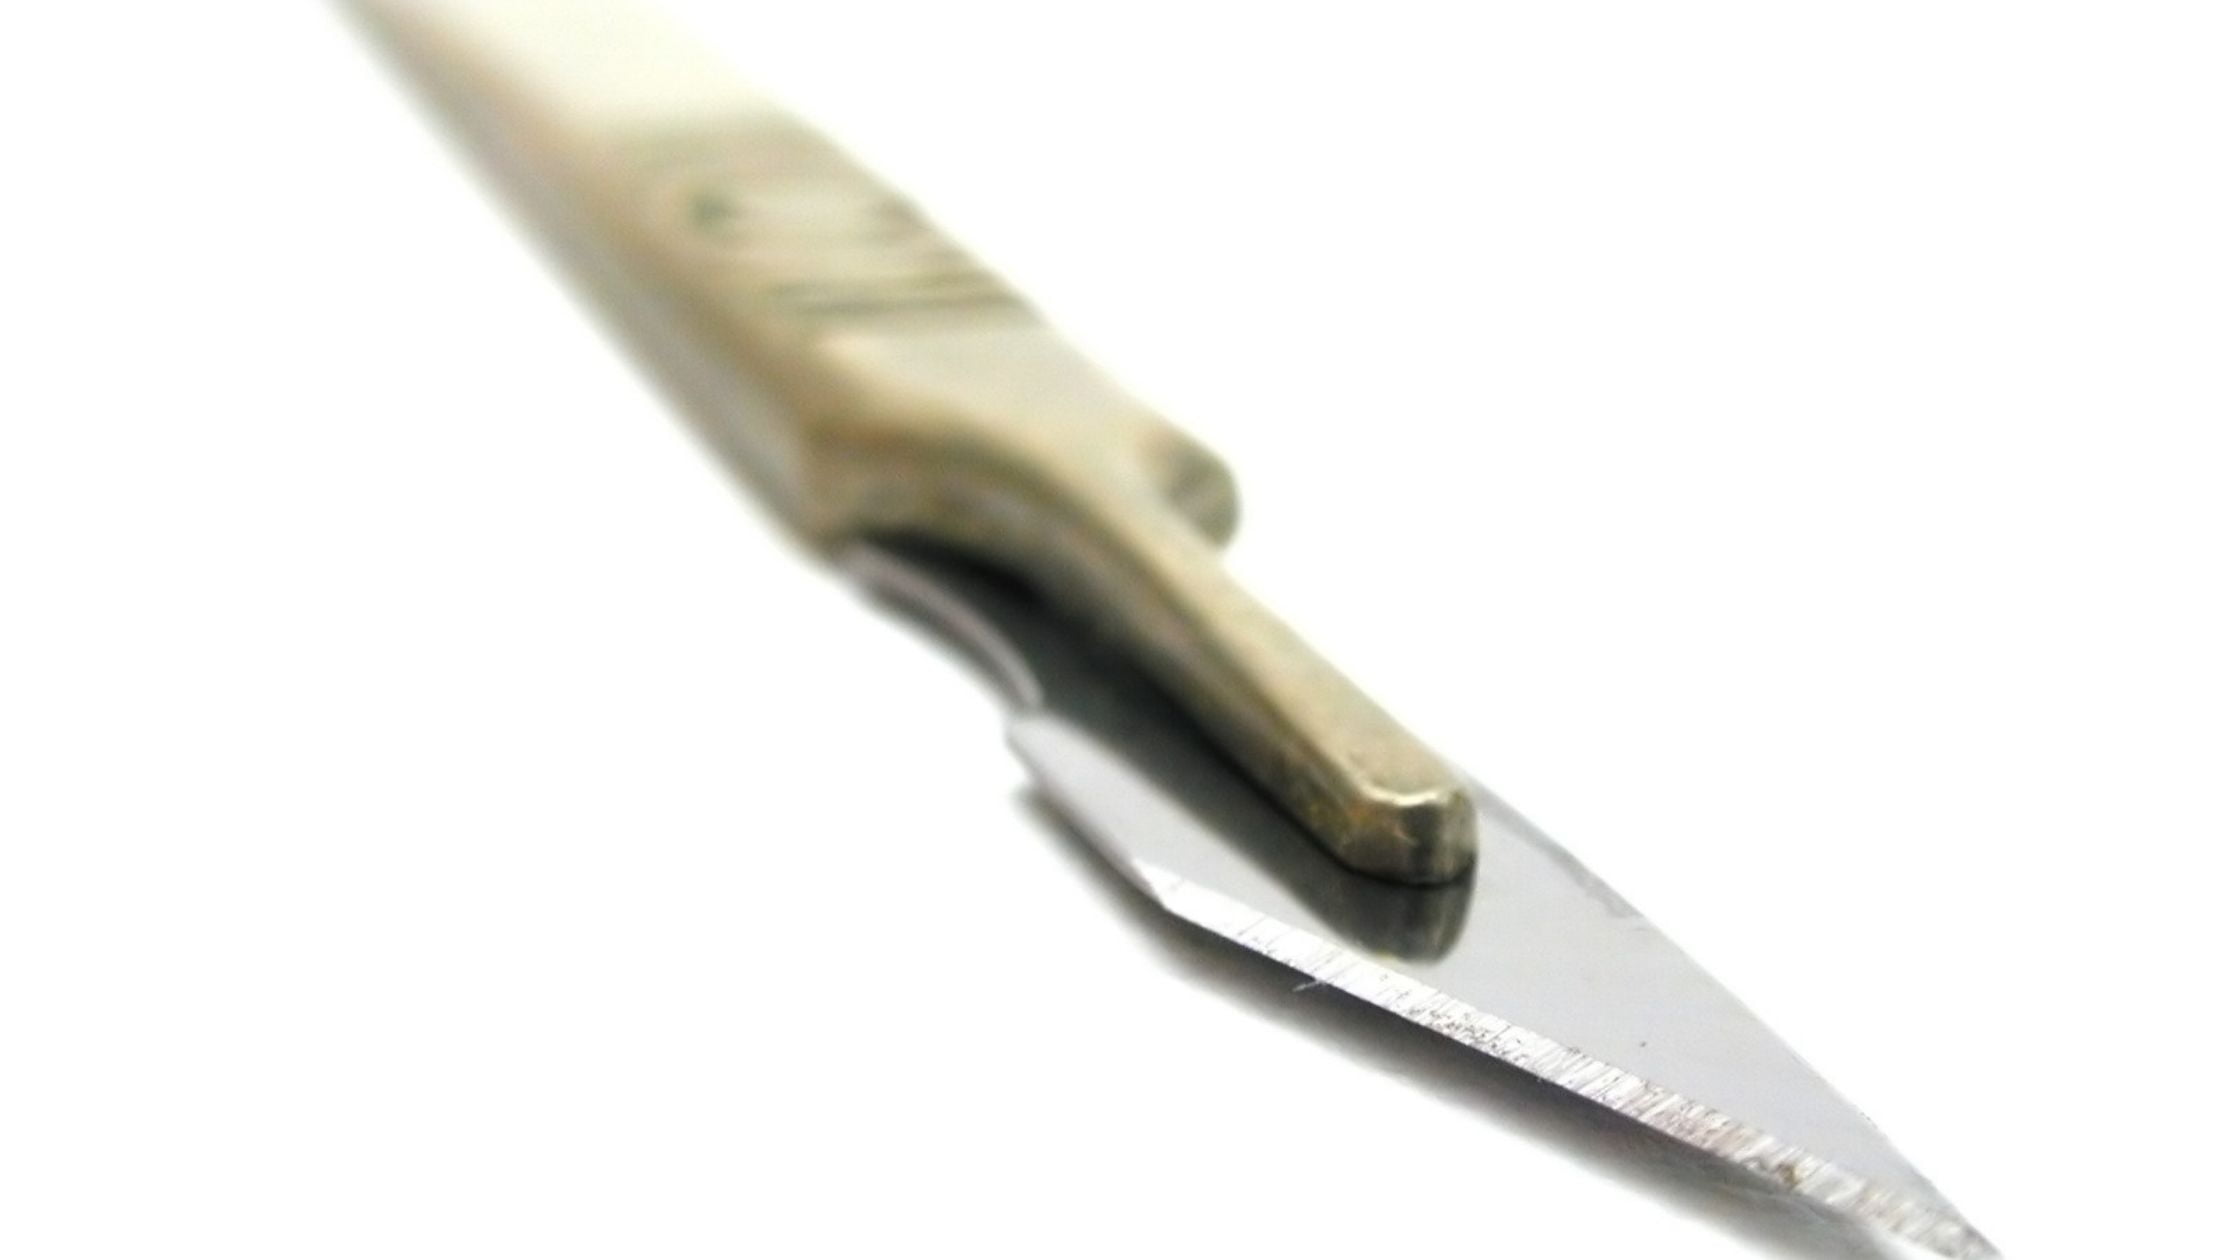 types of Garden knives: Garden Scalpel